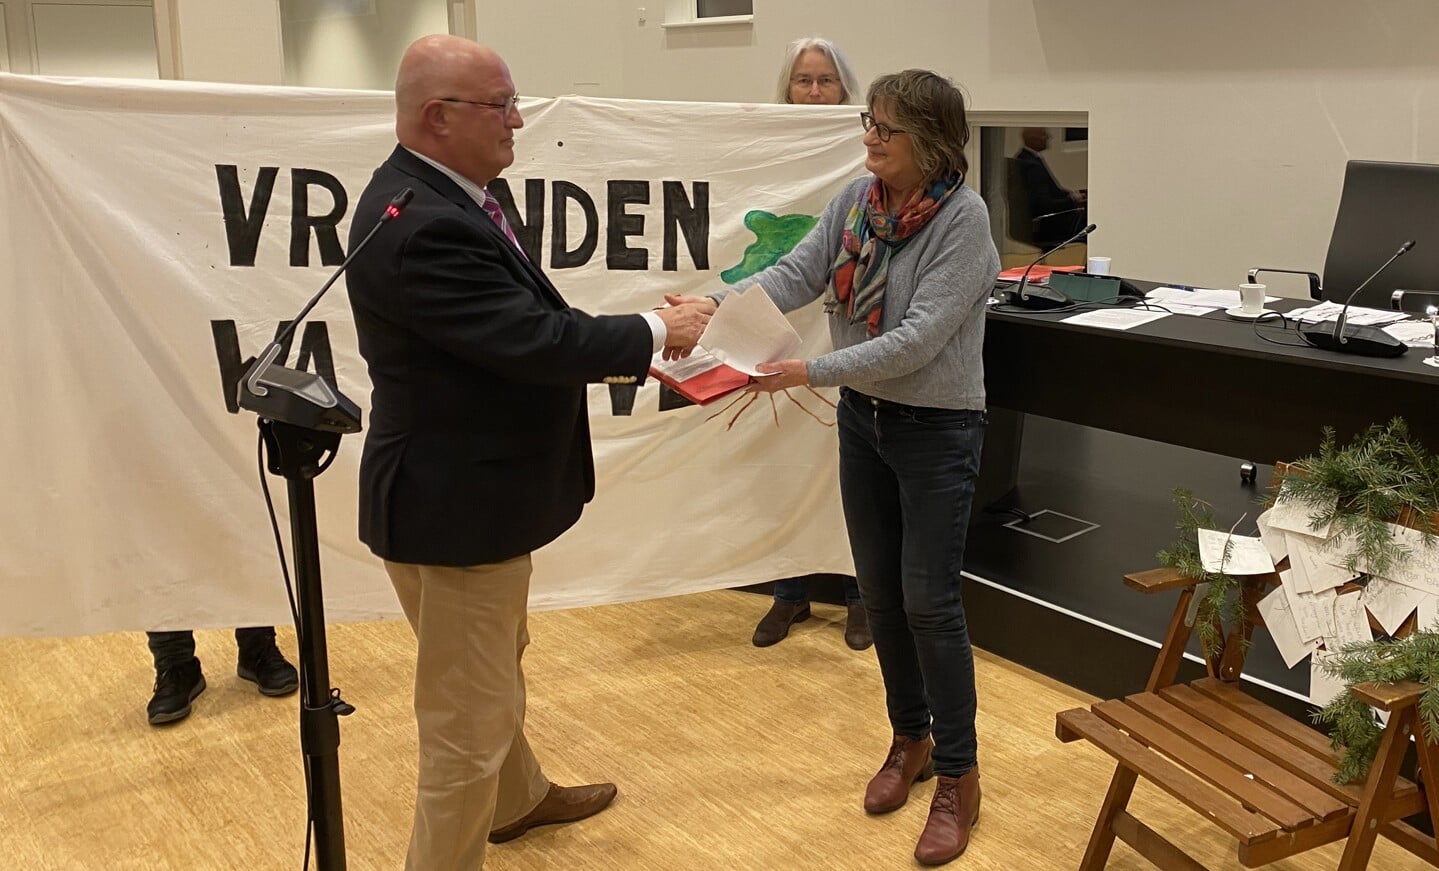 Actievoerster Van den Boer biedt de petitie aan aan de voorzitter van de vergadering: VVD-raadslid Aat Grinwis. 